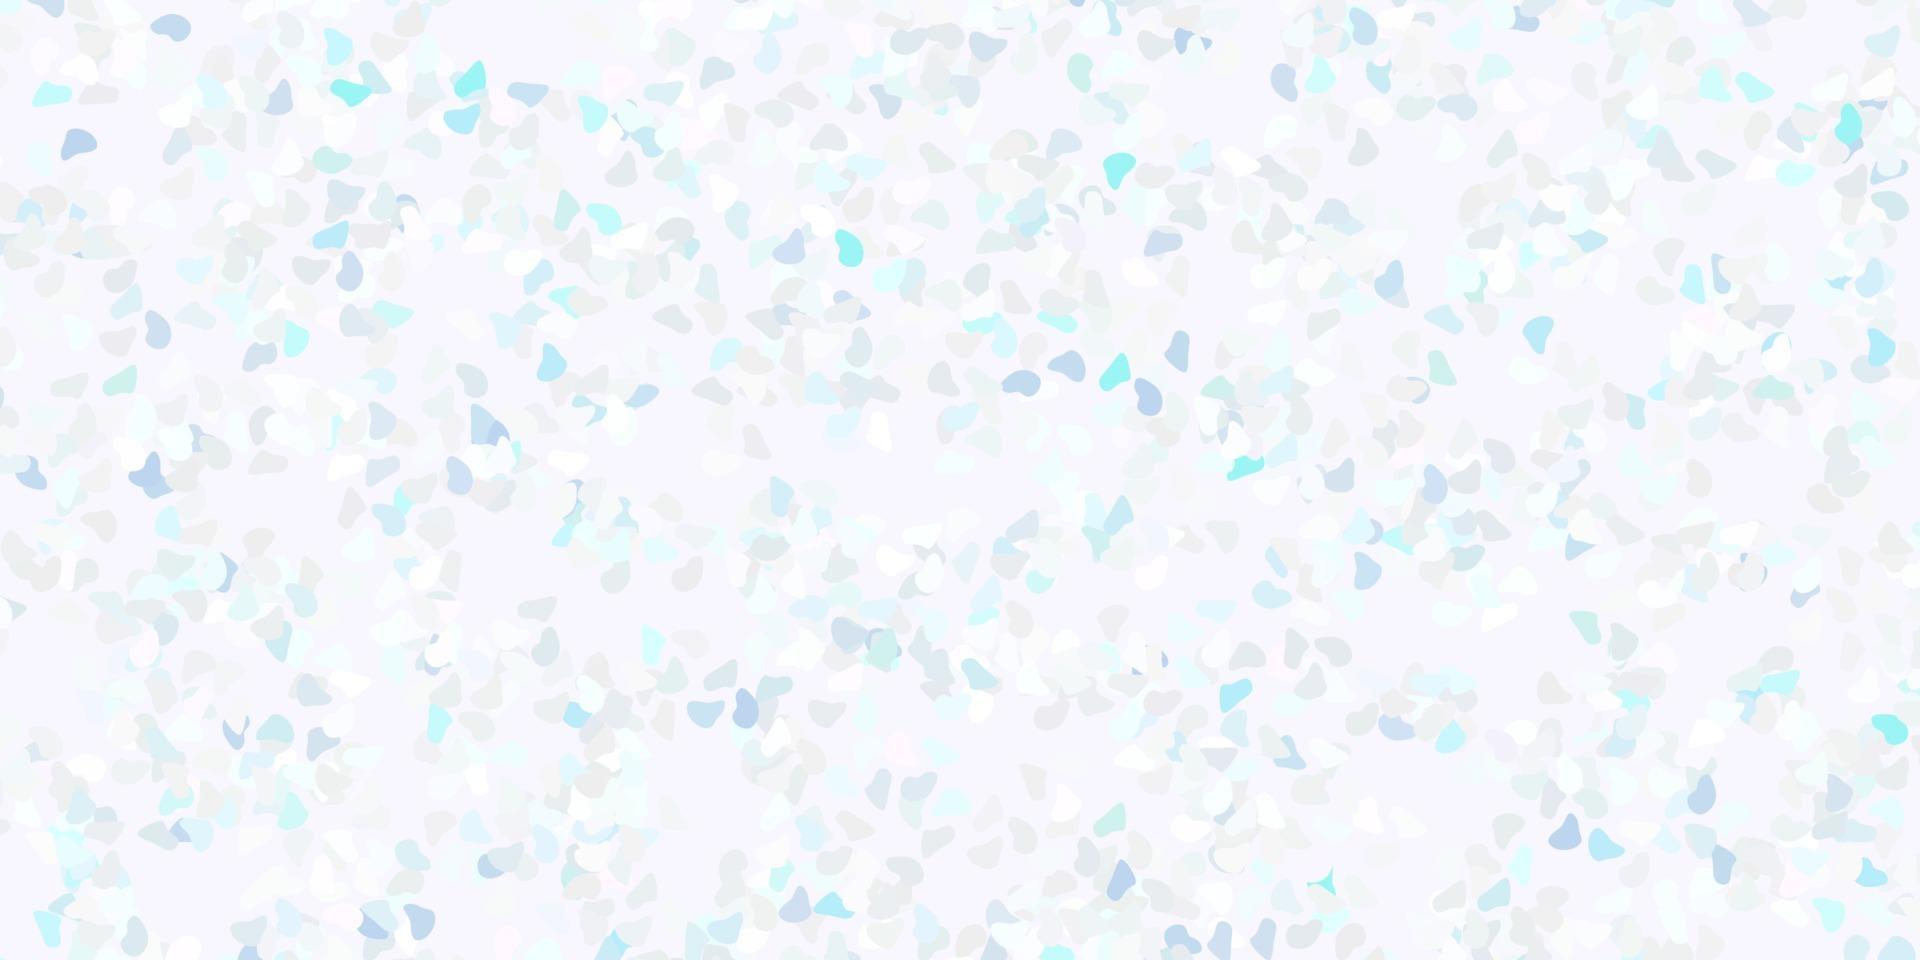 ljusrosa, blå vektorbakgrund med slumpmässiga former. vektor